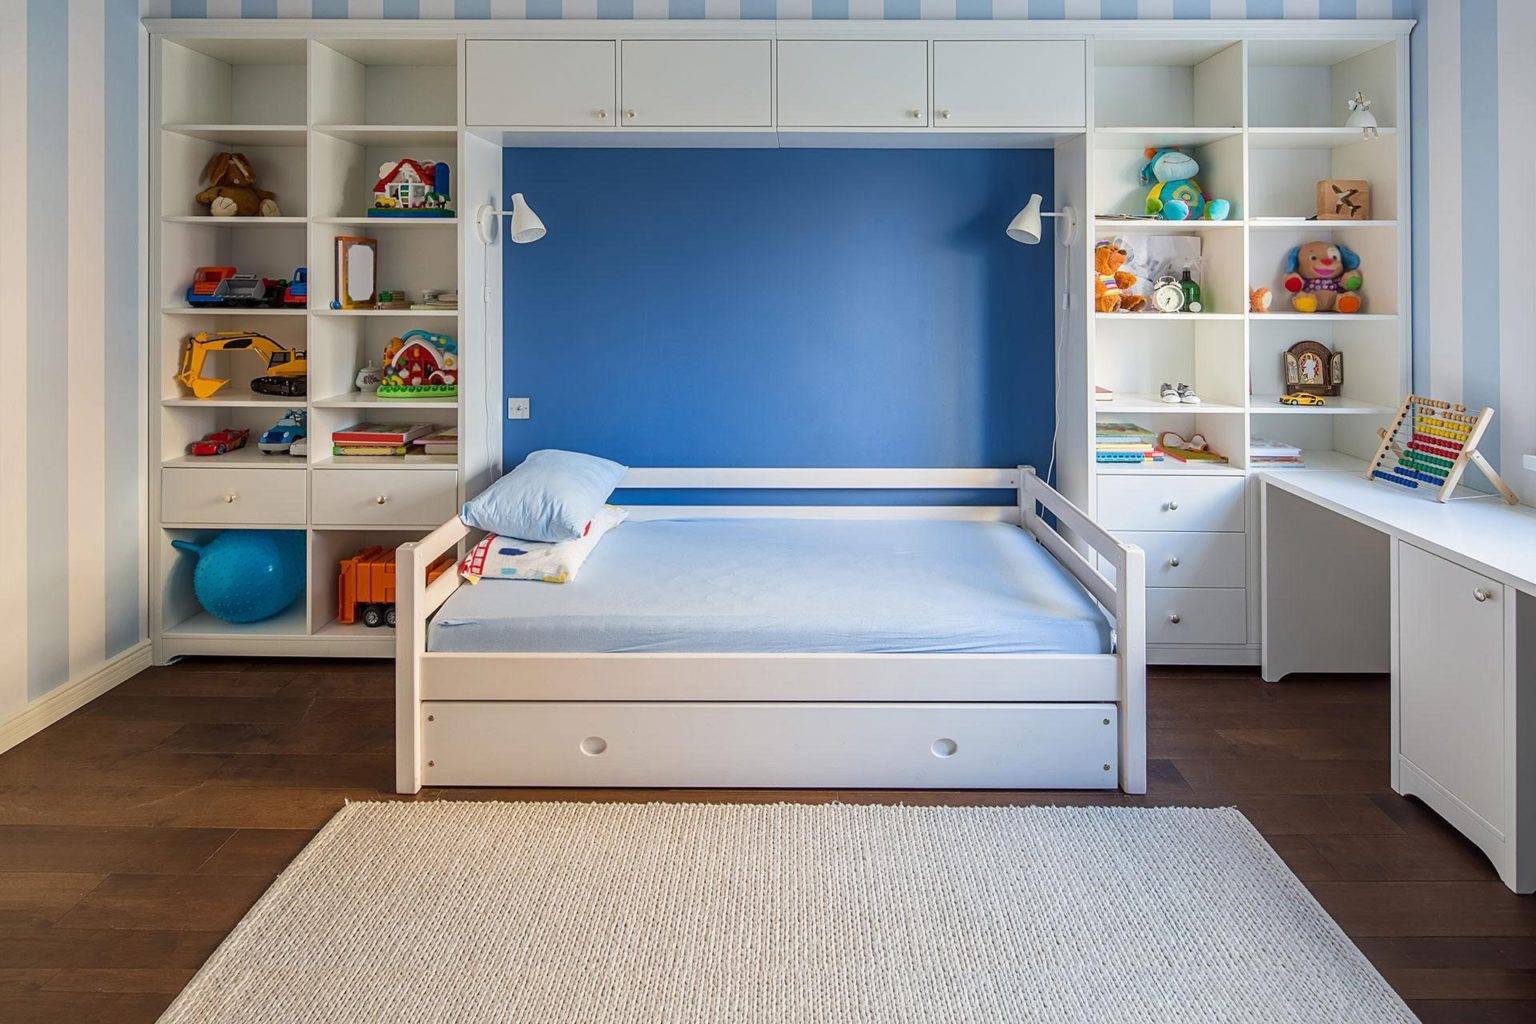 Ý tưởng thiết kế phòng ngủ độc đáo từ việc decor tường đầu giường - Ảnh 6.